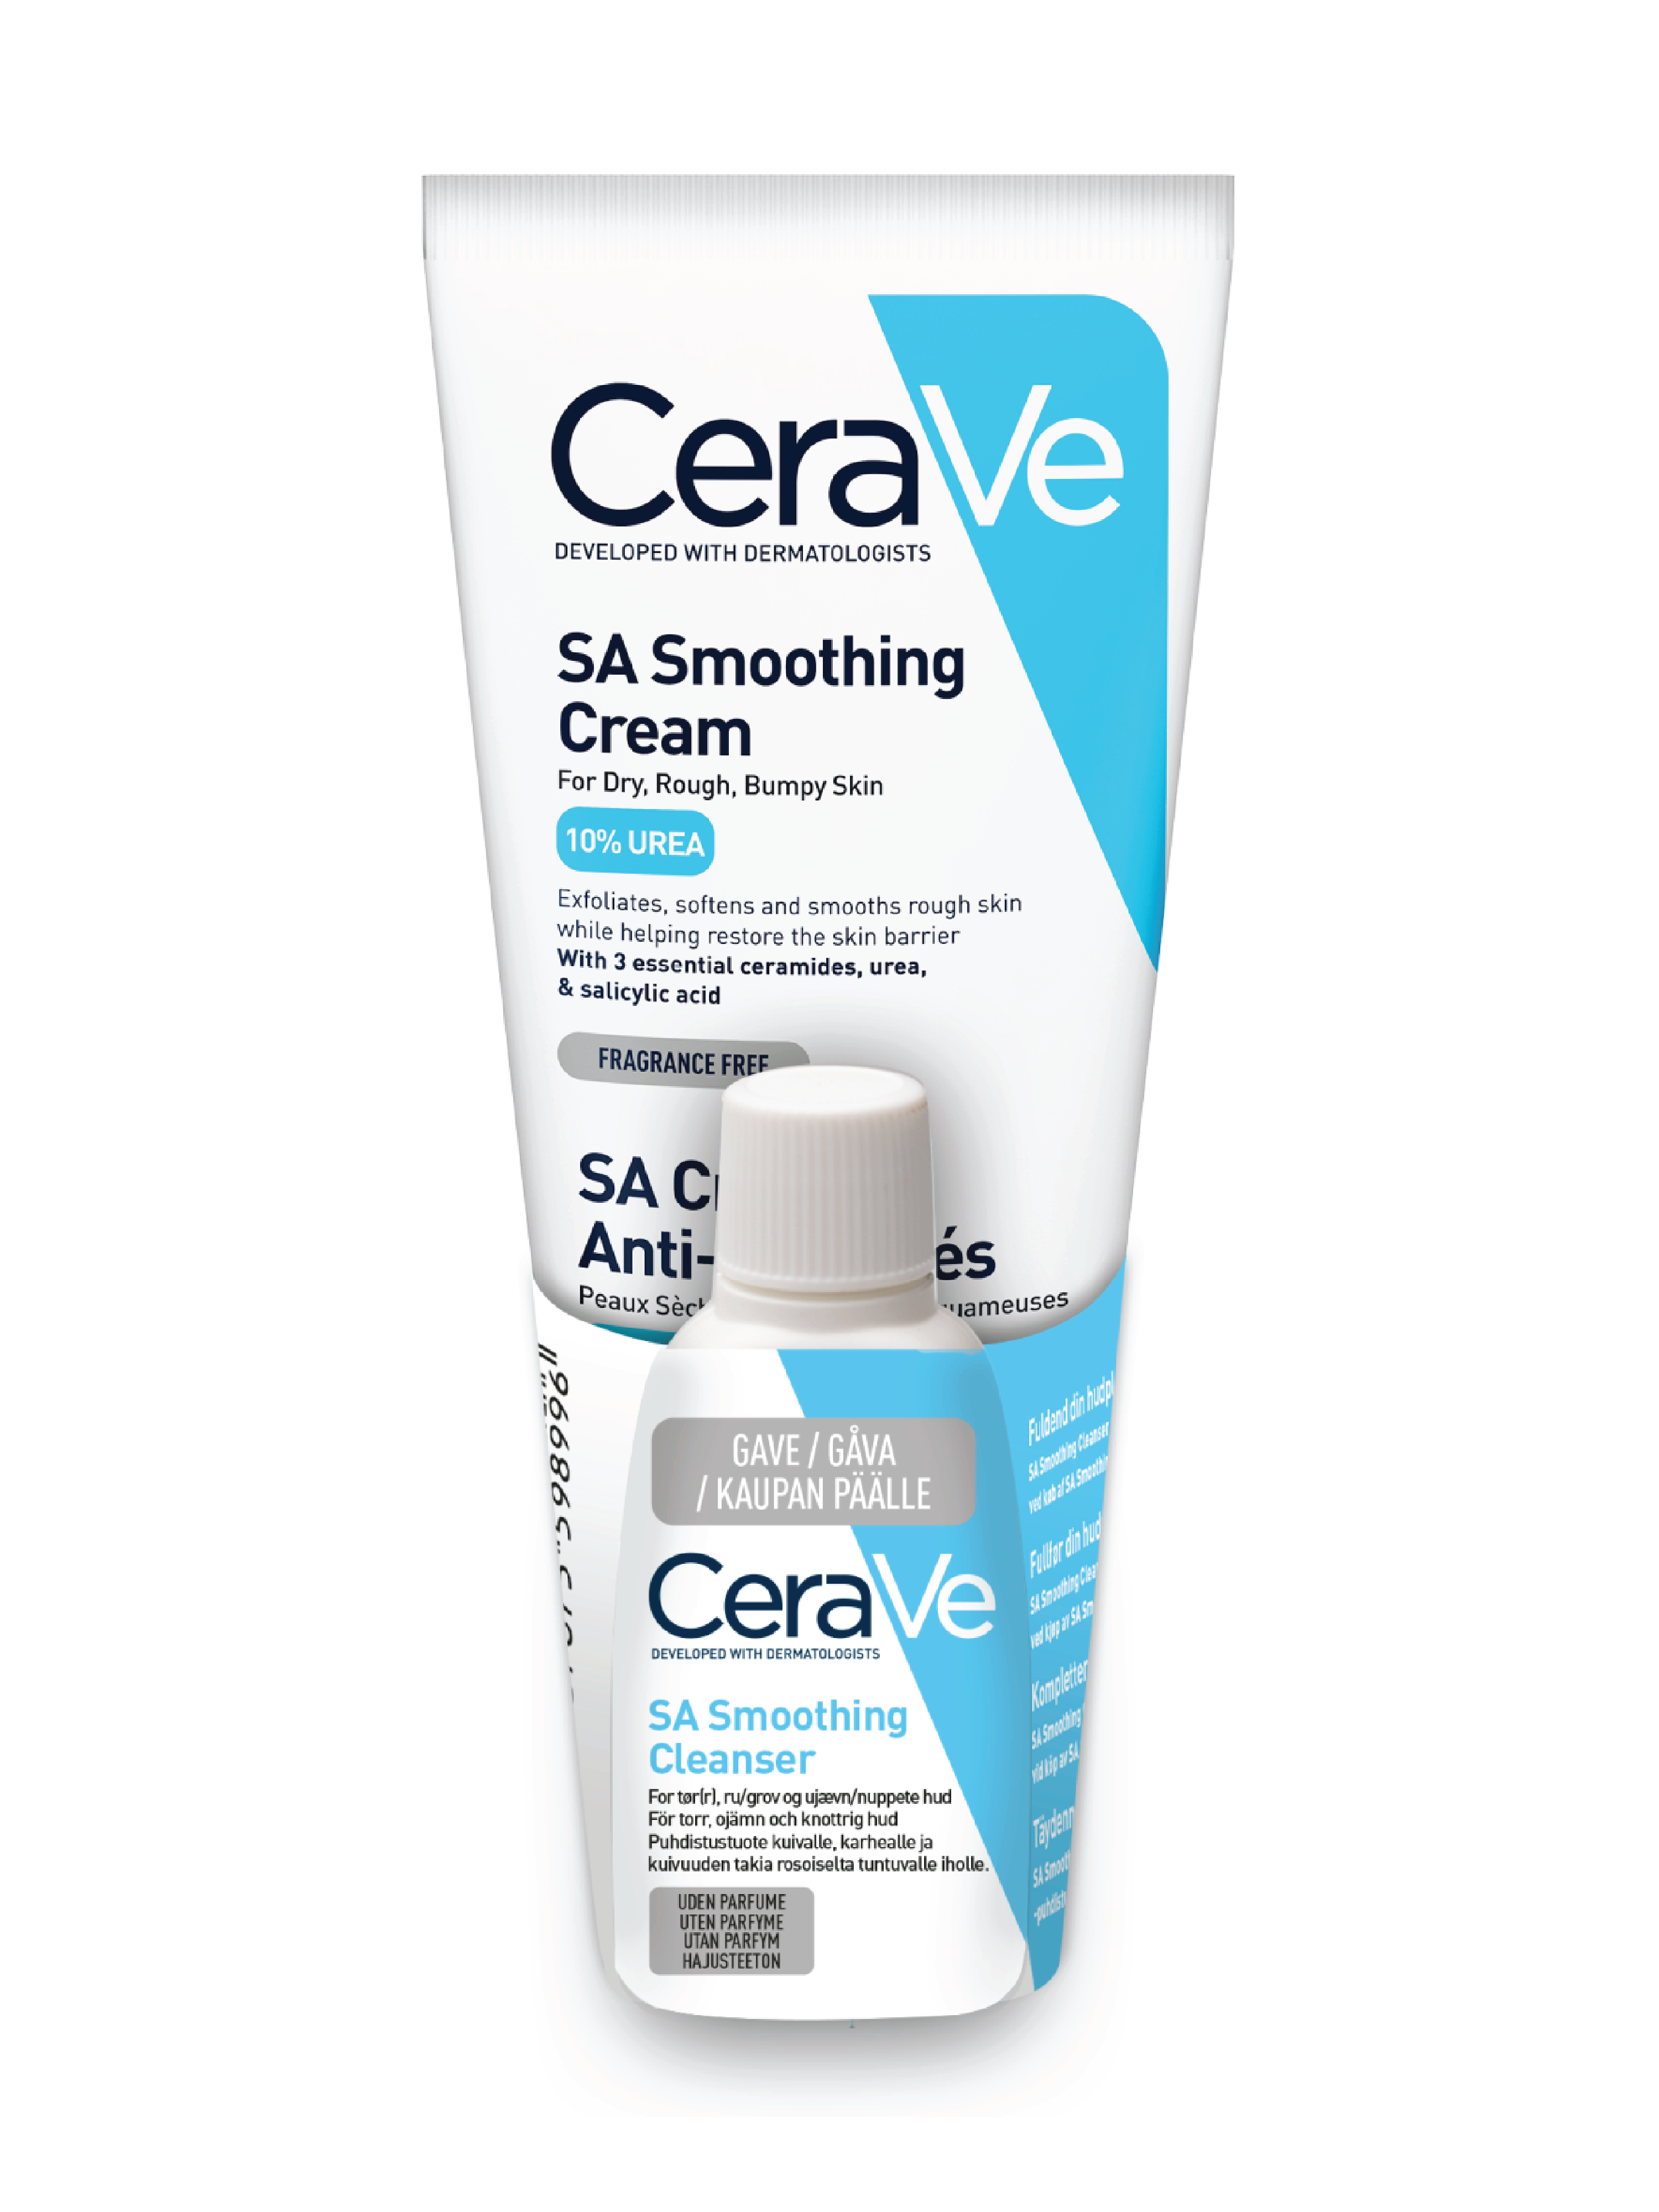 CeraVe SA Smoothing Cream & Cleanser, 177 ml krem og 20 ml rens